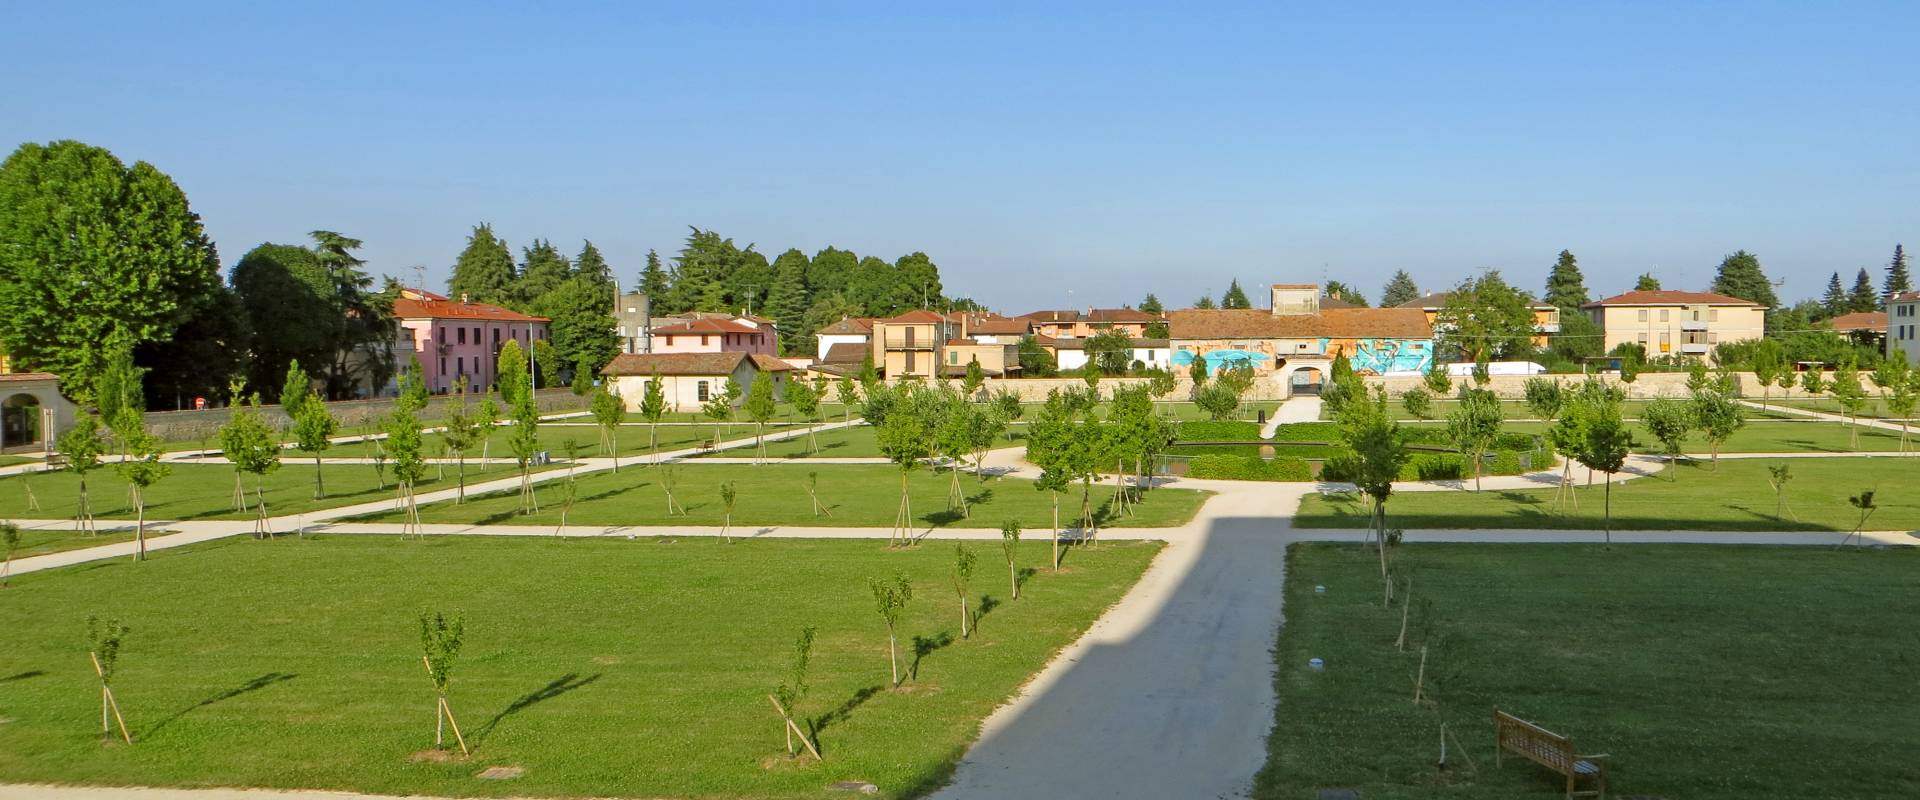 Rocca Sanvitale (Sala Baganza) - Giardino del Melograno 1 2019-06-25 foto di Parma198